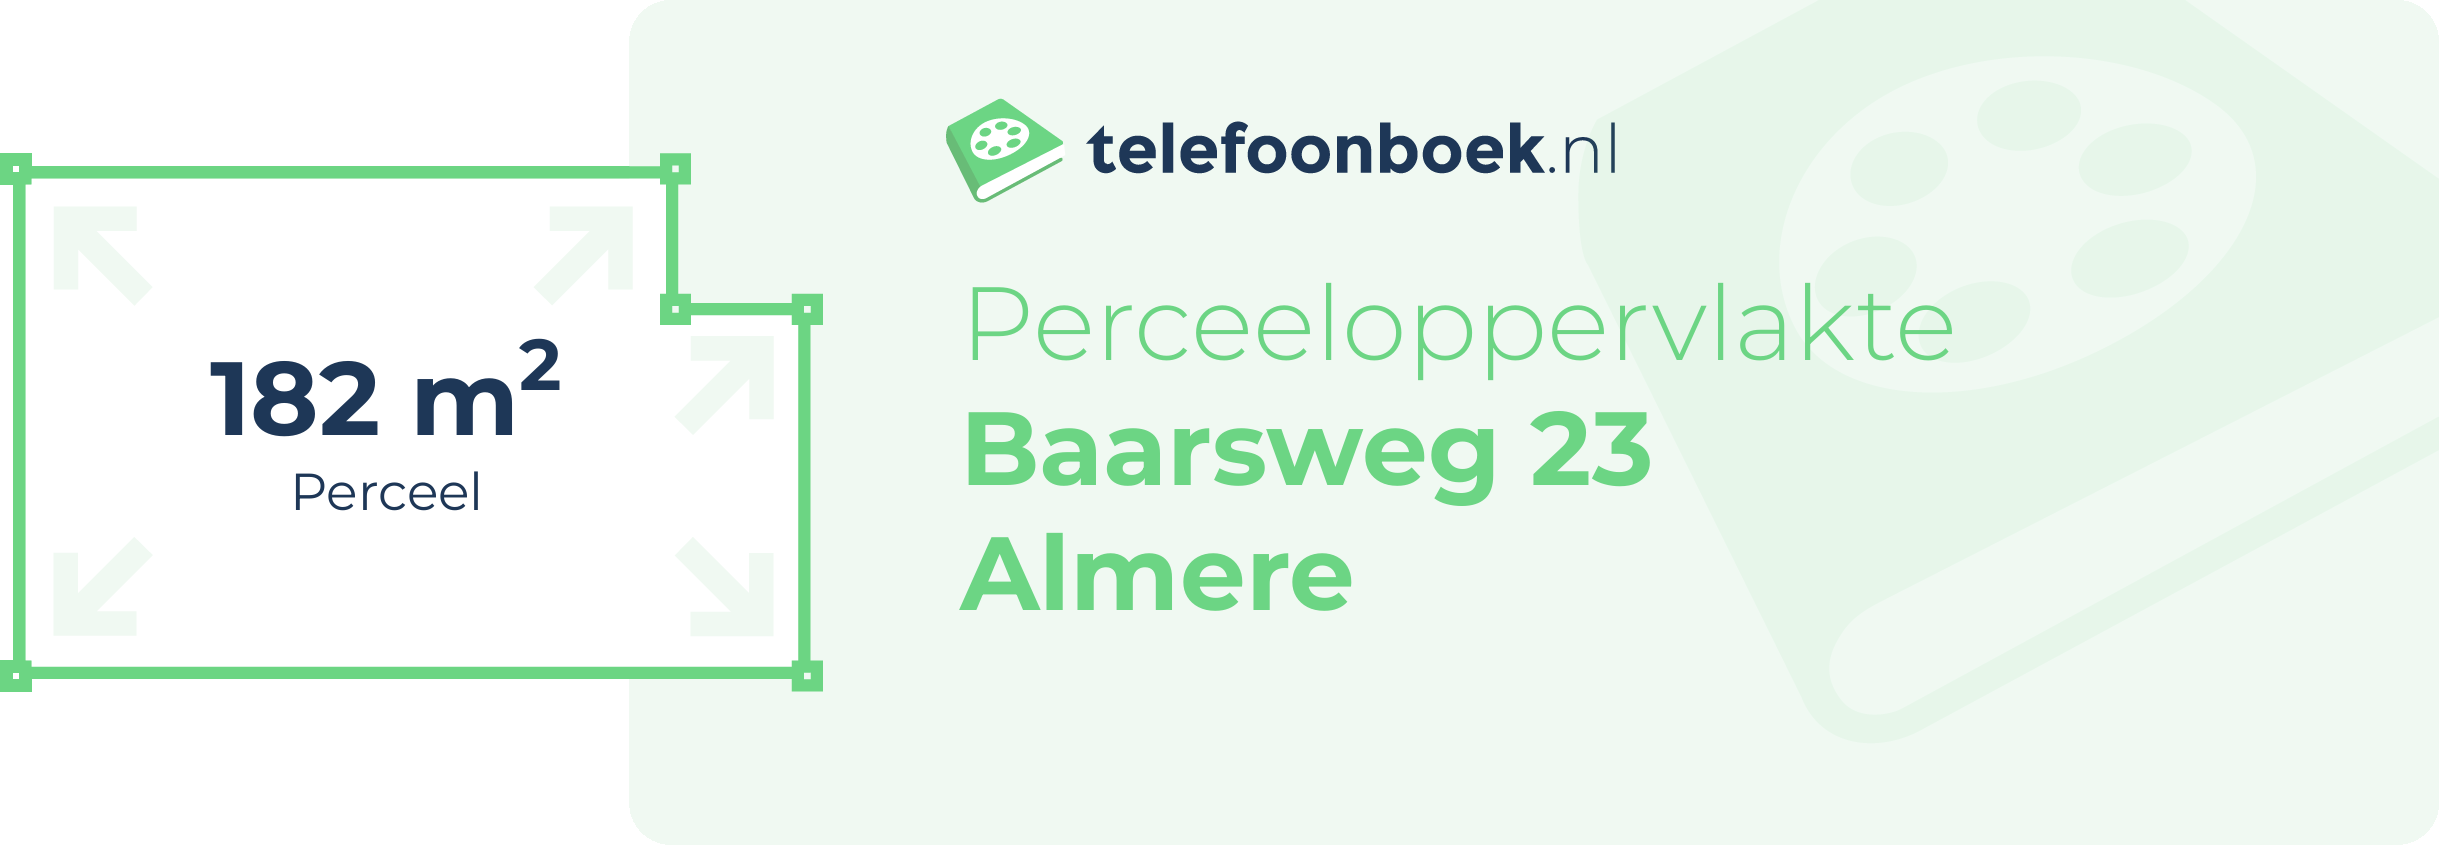 Perceeloppervlakte Baarsweg 23 Almere